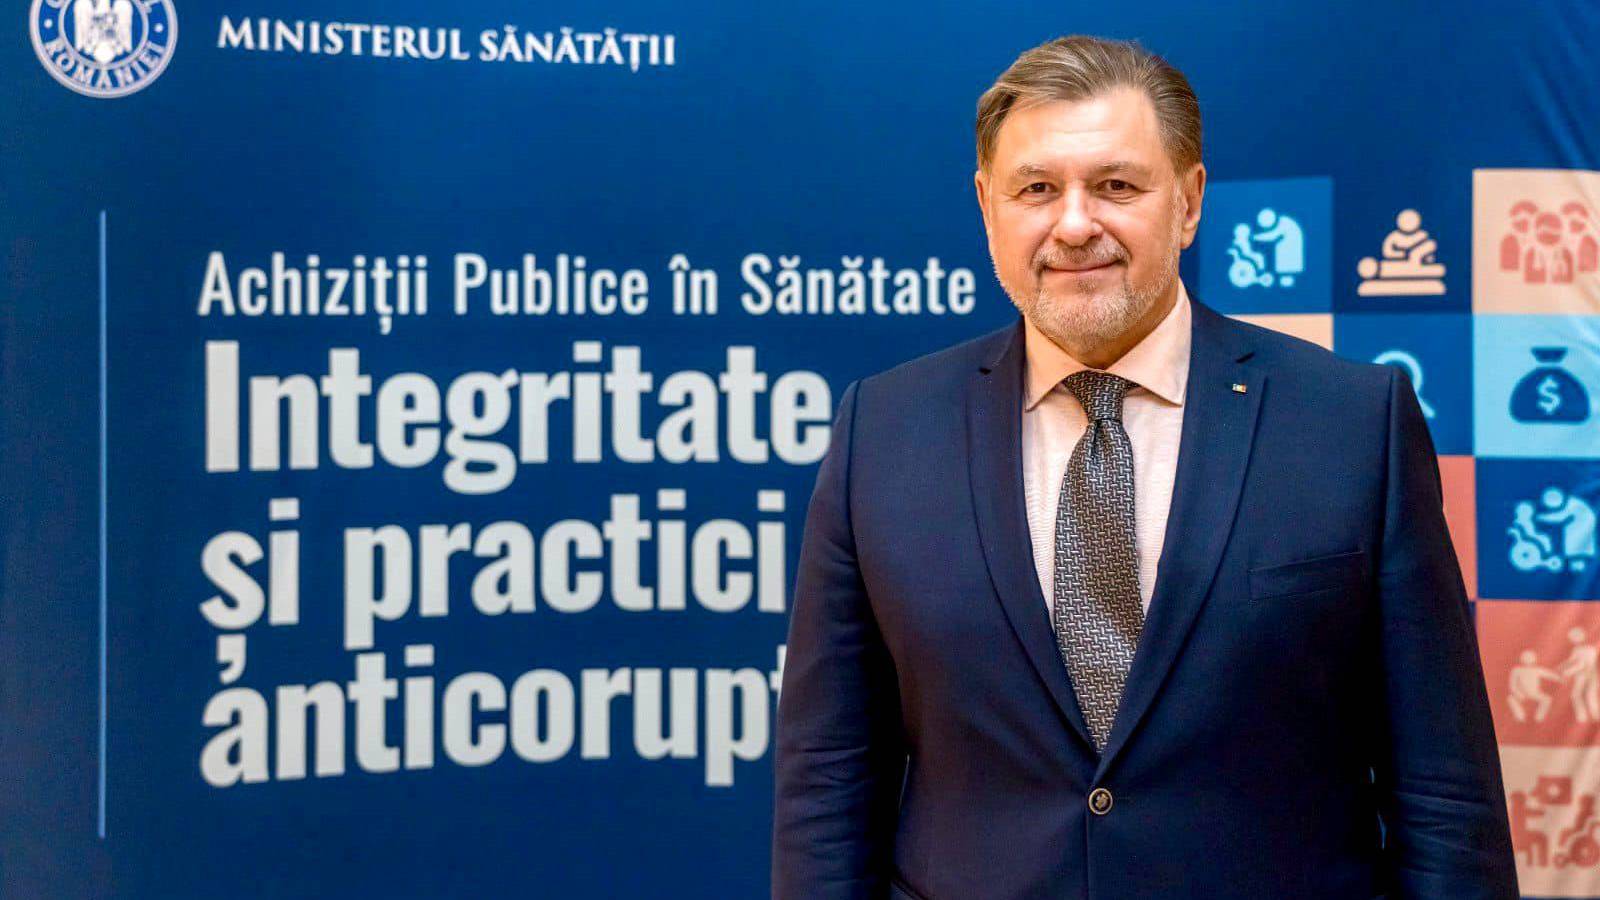 Ministrul Sanatatii Prevederile Ordinului Eliberarea Antibioticelor fara Reteta Romania